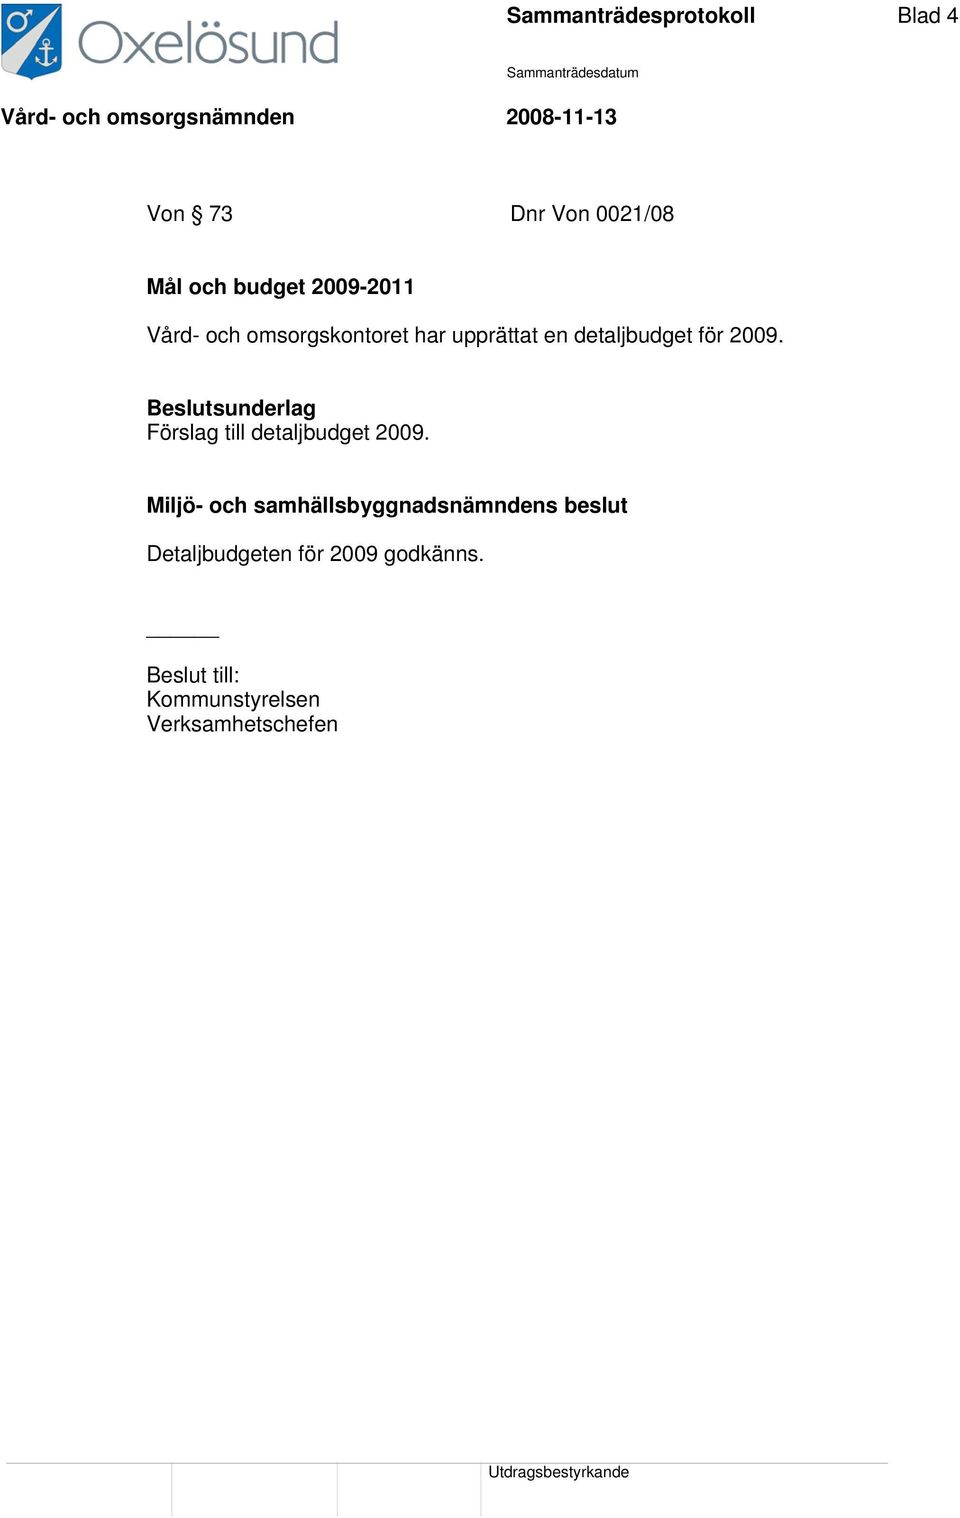 2009. Förslag till detaljbudget 2009.